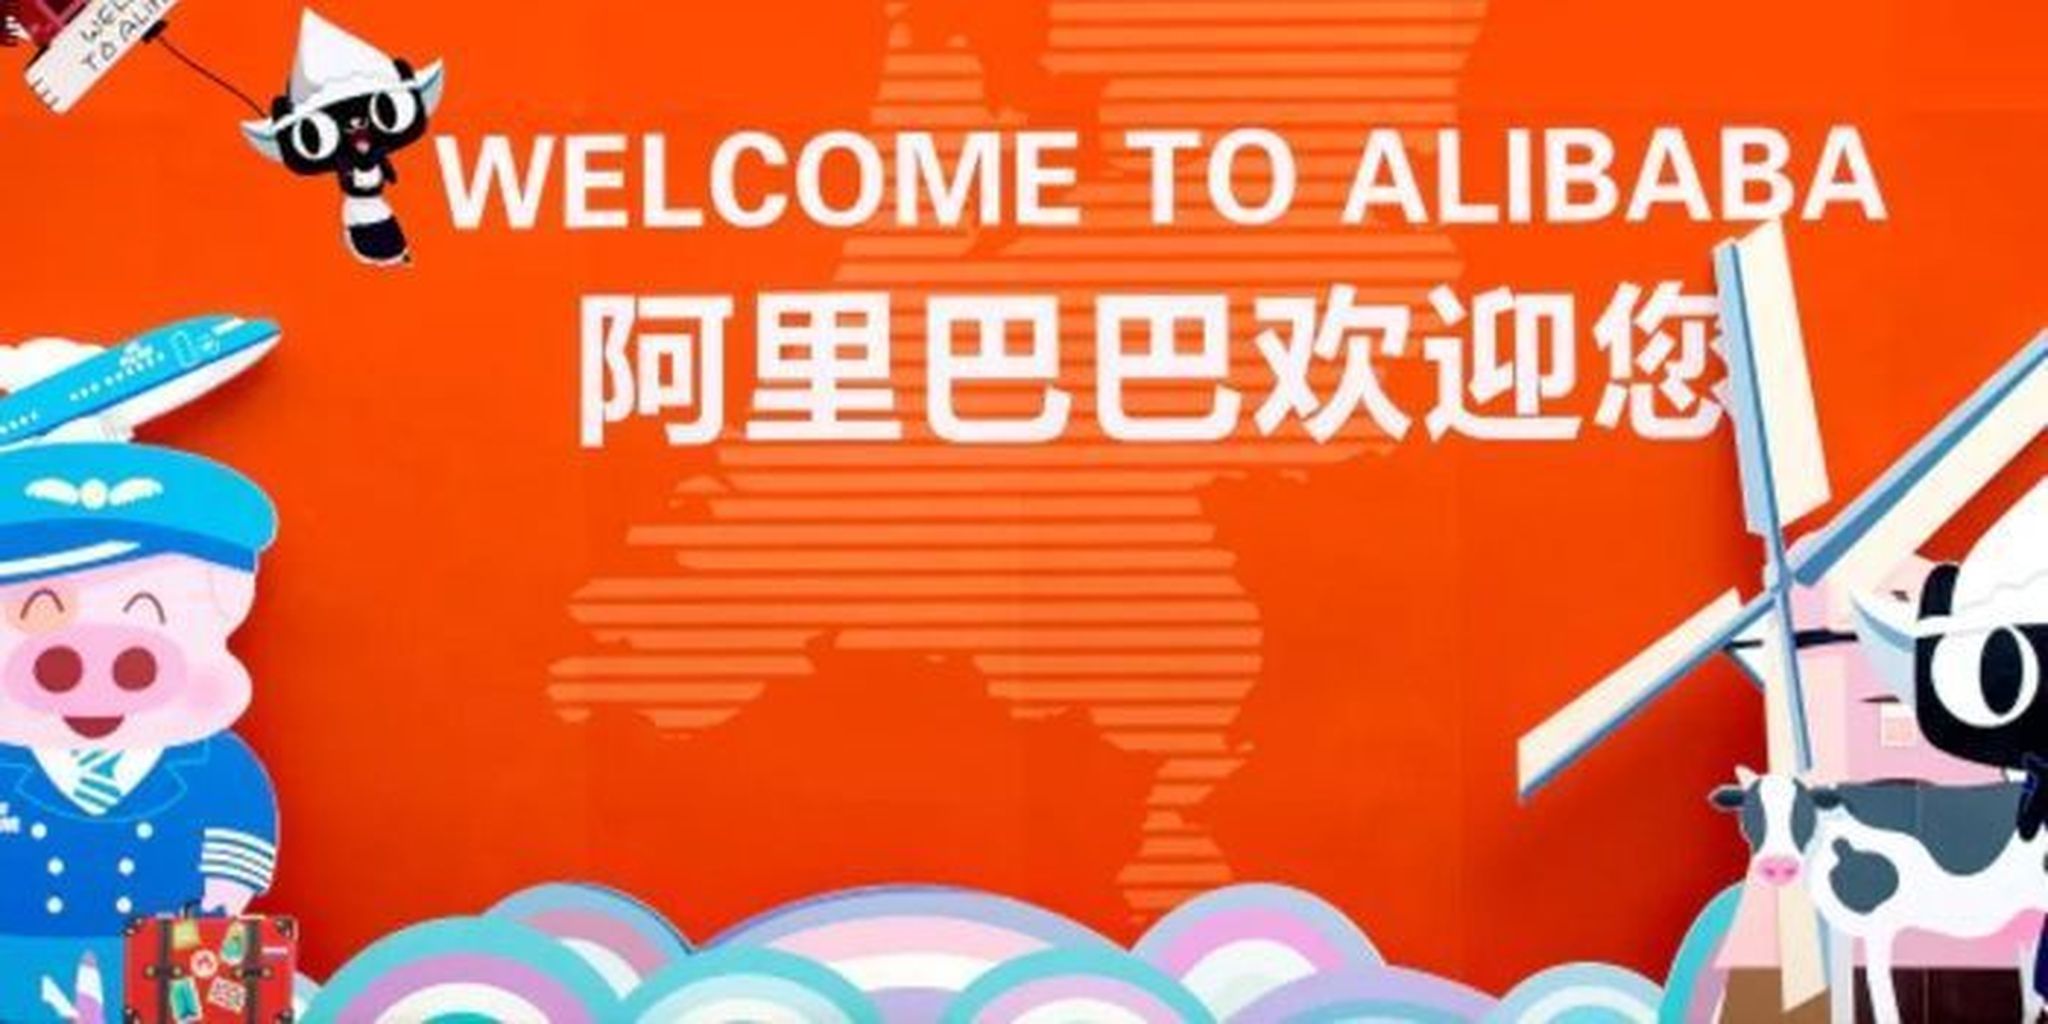 Goedkoop, maar onbemind? Alibaba, Baidu en Tencent 